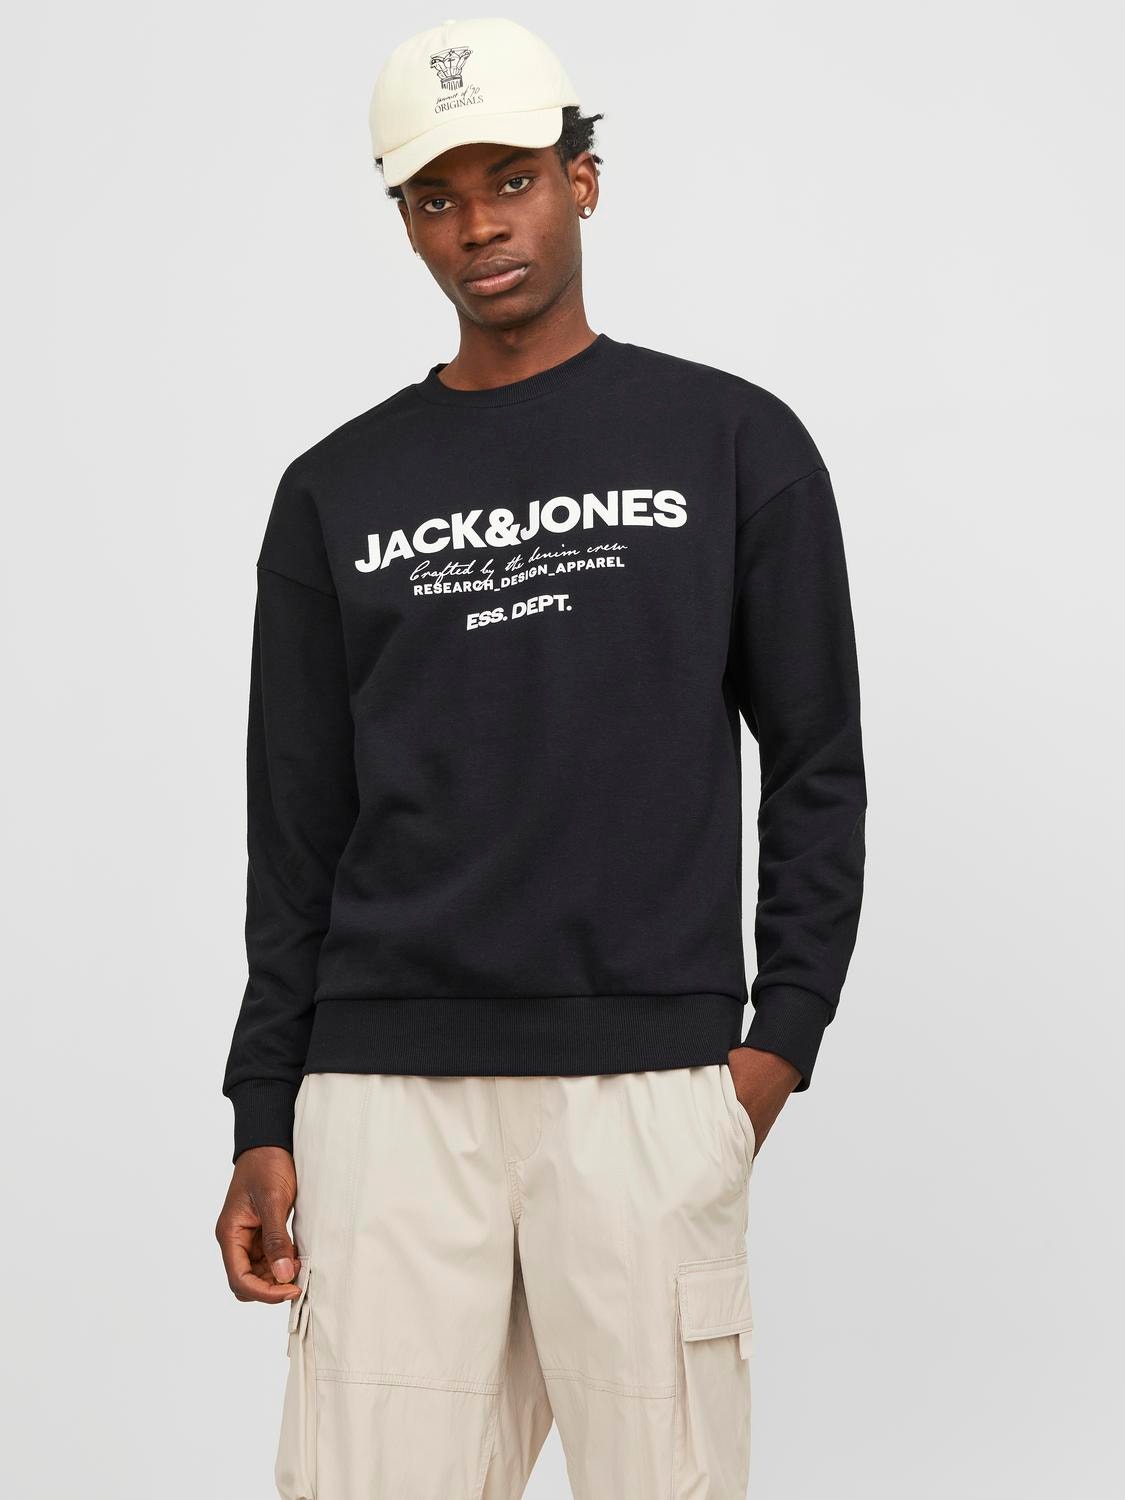 Jack & Jones Logo Crew neck Sweatshirt -Black - 12249273